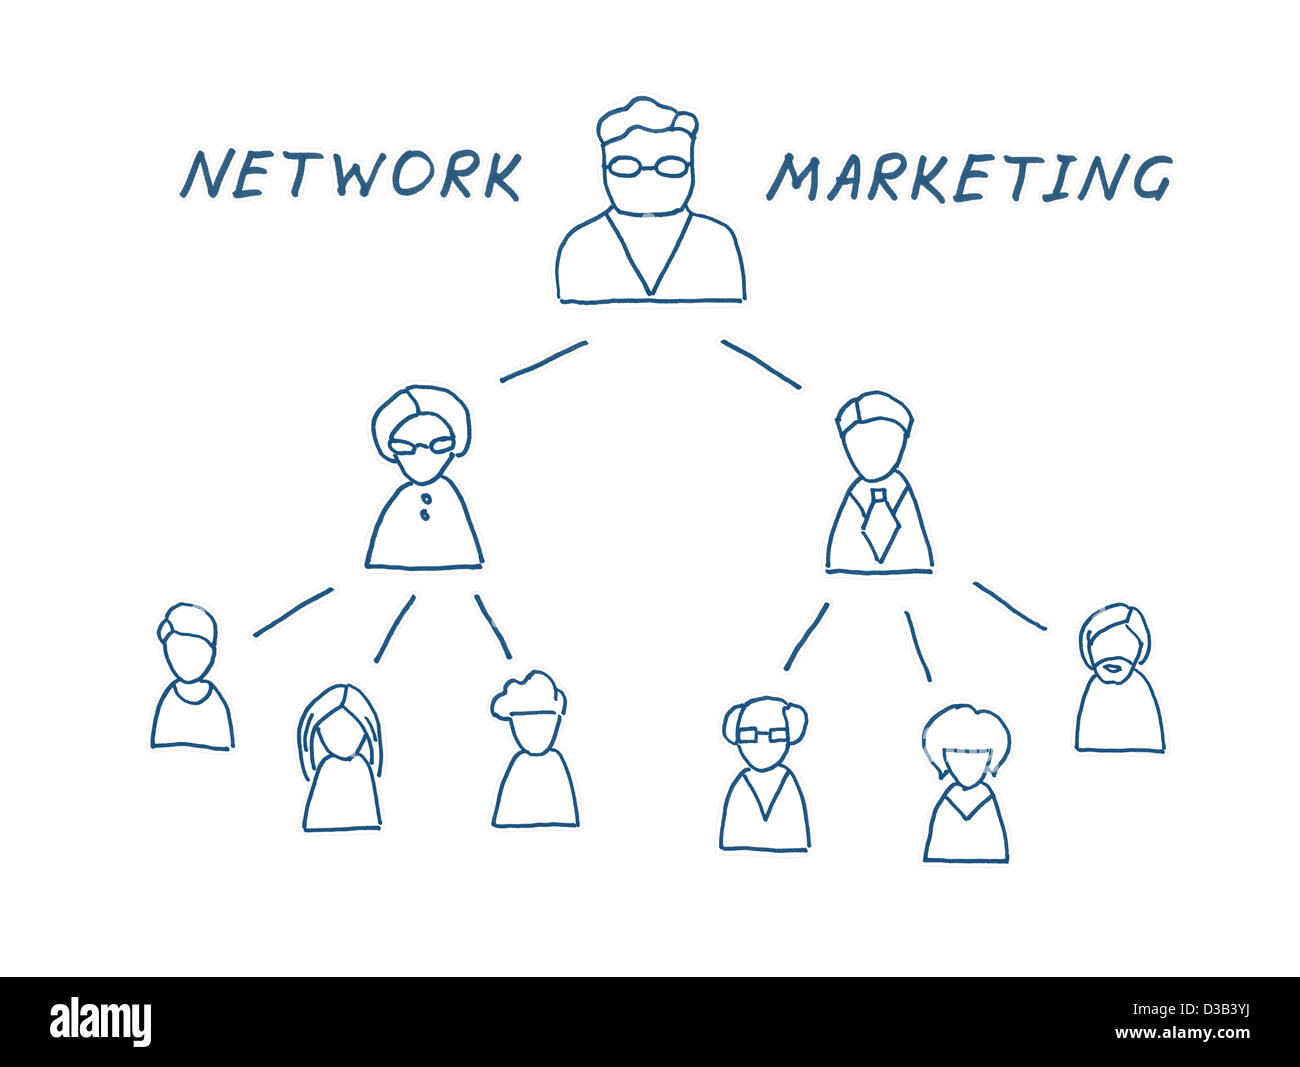 Network multilevel marketing illustration. Isolated on white. Stock Photo